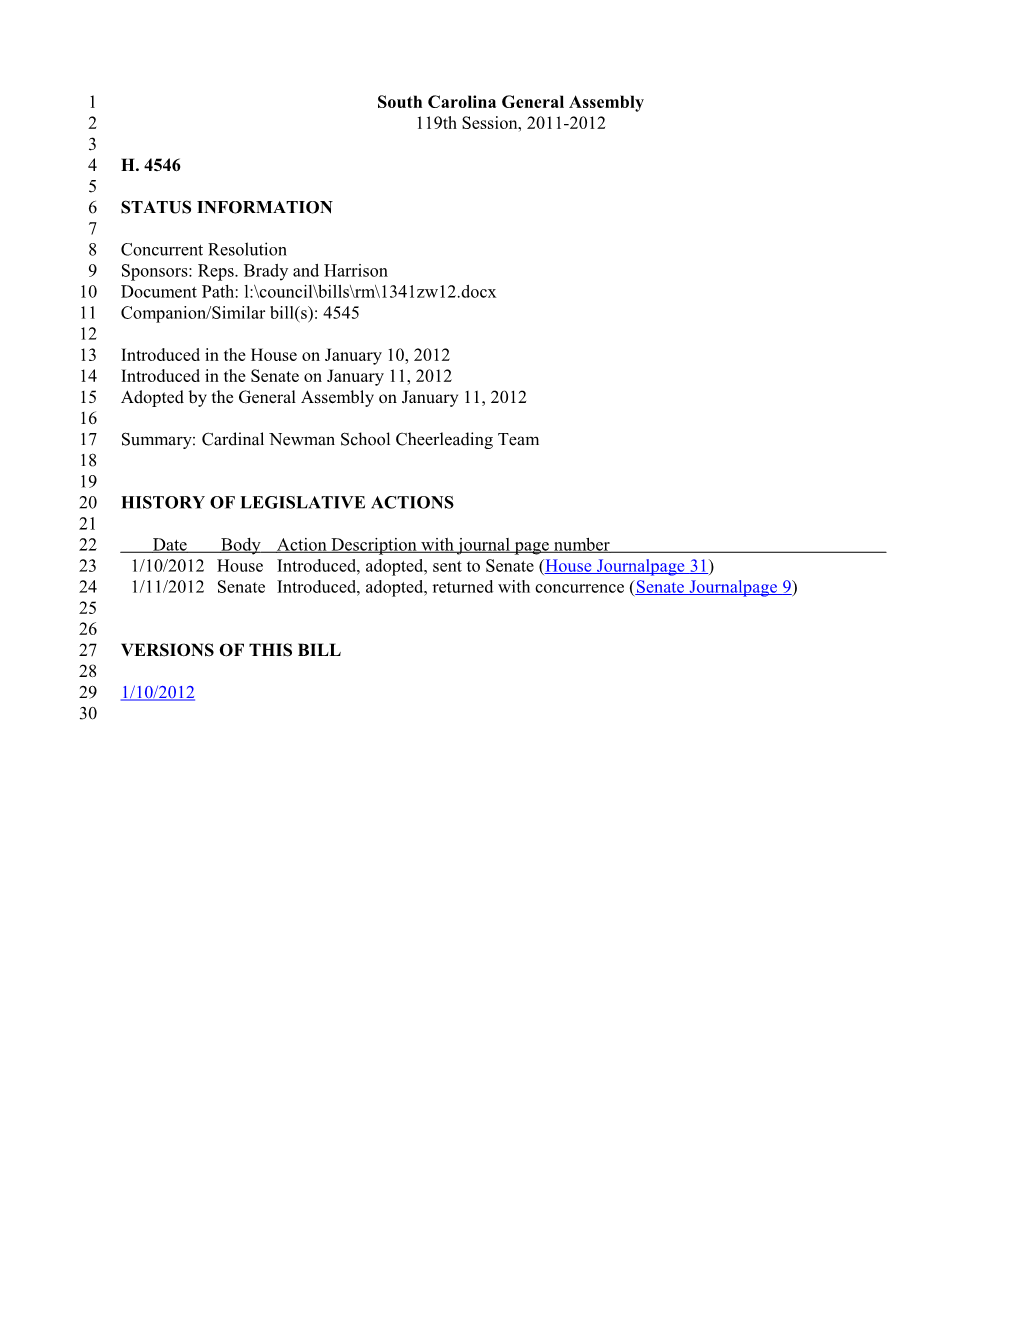 2011-2012 Bill 4546: Cardinal Newman School Cheerleading Team - South Carolina Legislature